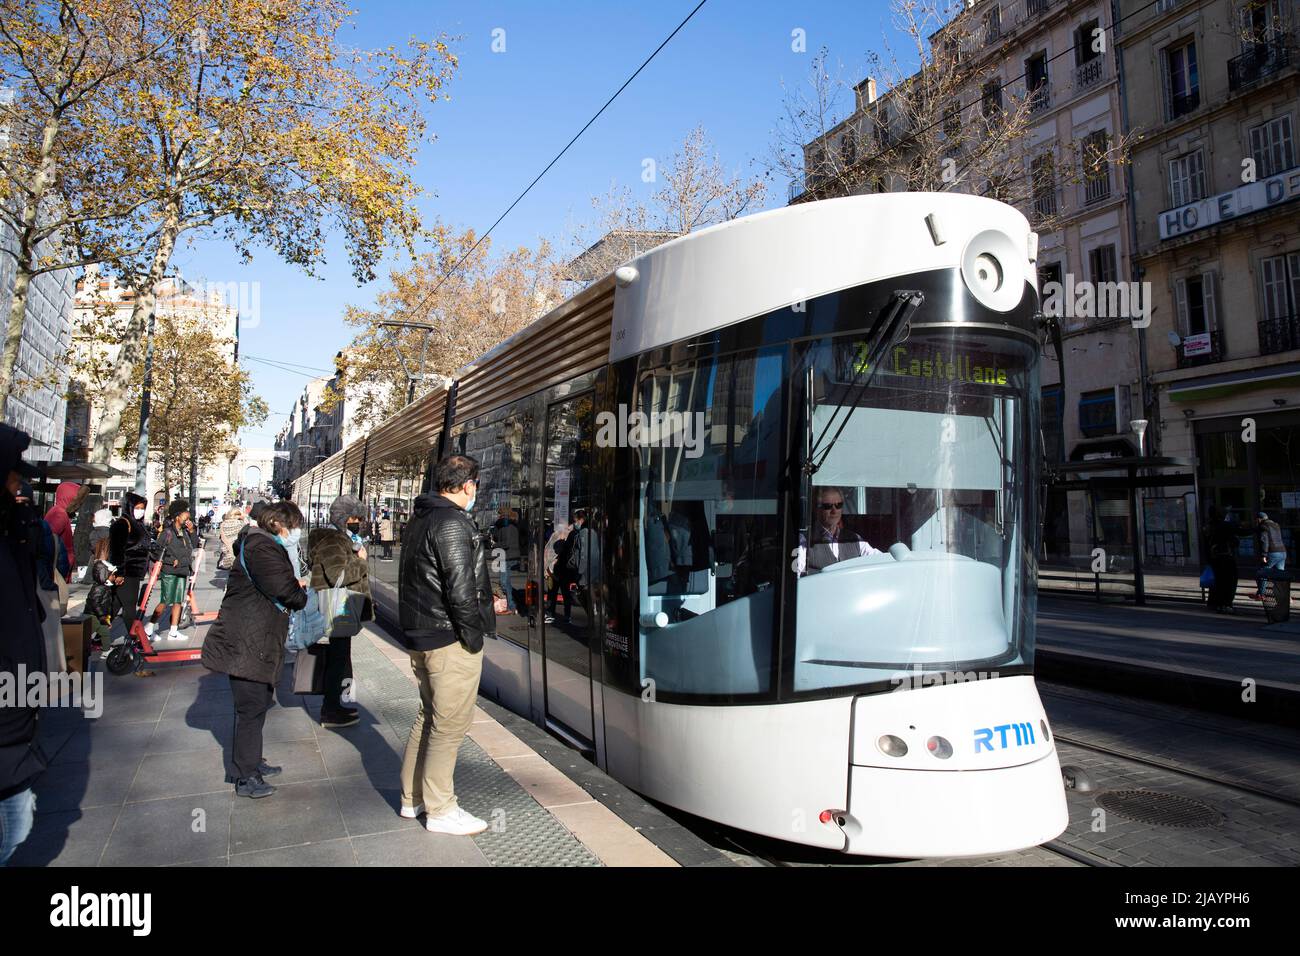 Red de tranvías en Marsella, Francia, el 6 de diciembre de 2021. La moderna red de tranvías de la ciudad consta de tres líneas, que prestan servicio a 32 estaciones y operan a más de 15,8 kilómetros (9,8 millas) de ruta, inaugurado el 2007 de julio. Fotografía de Bénédicte Desrus Foto de stock